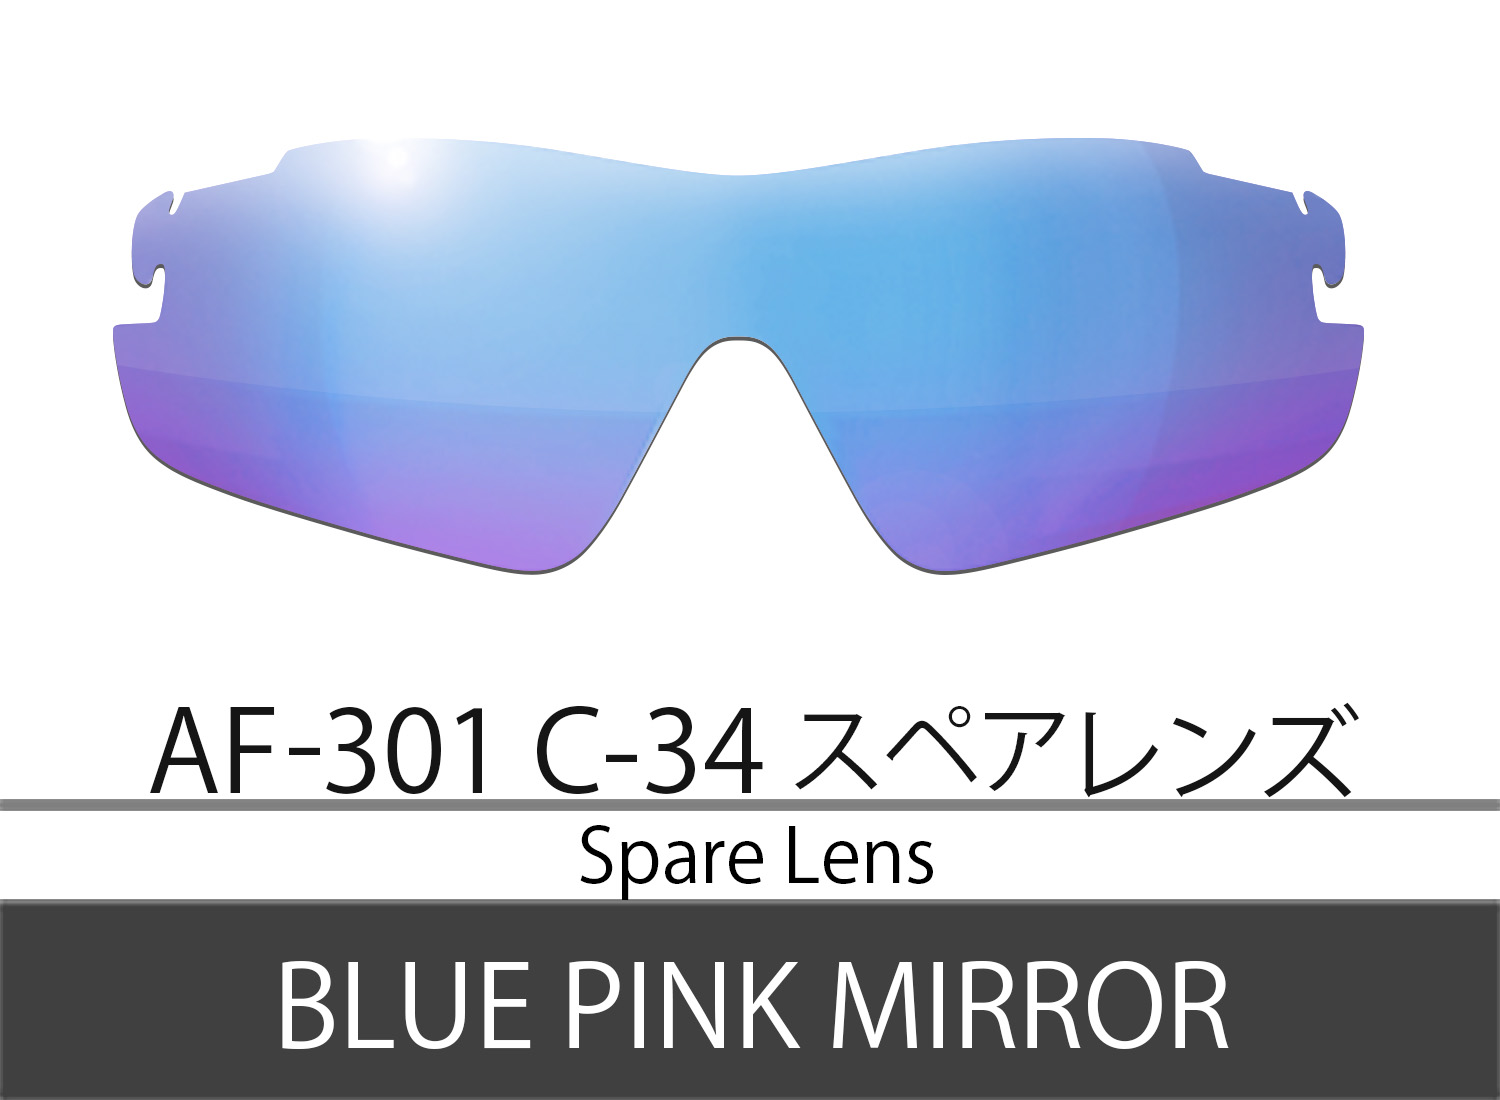 Spare LensAF-301 C-34 Blue Pink Mirror